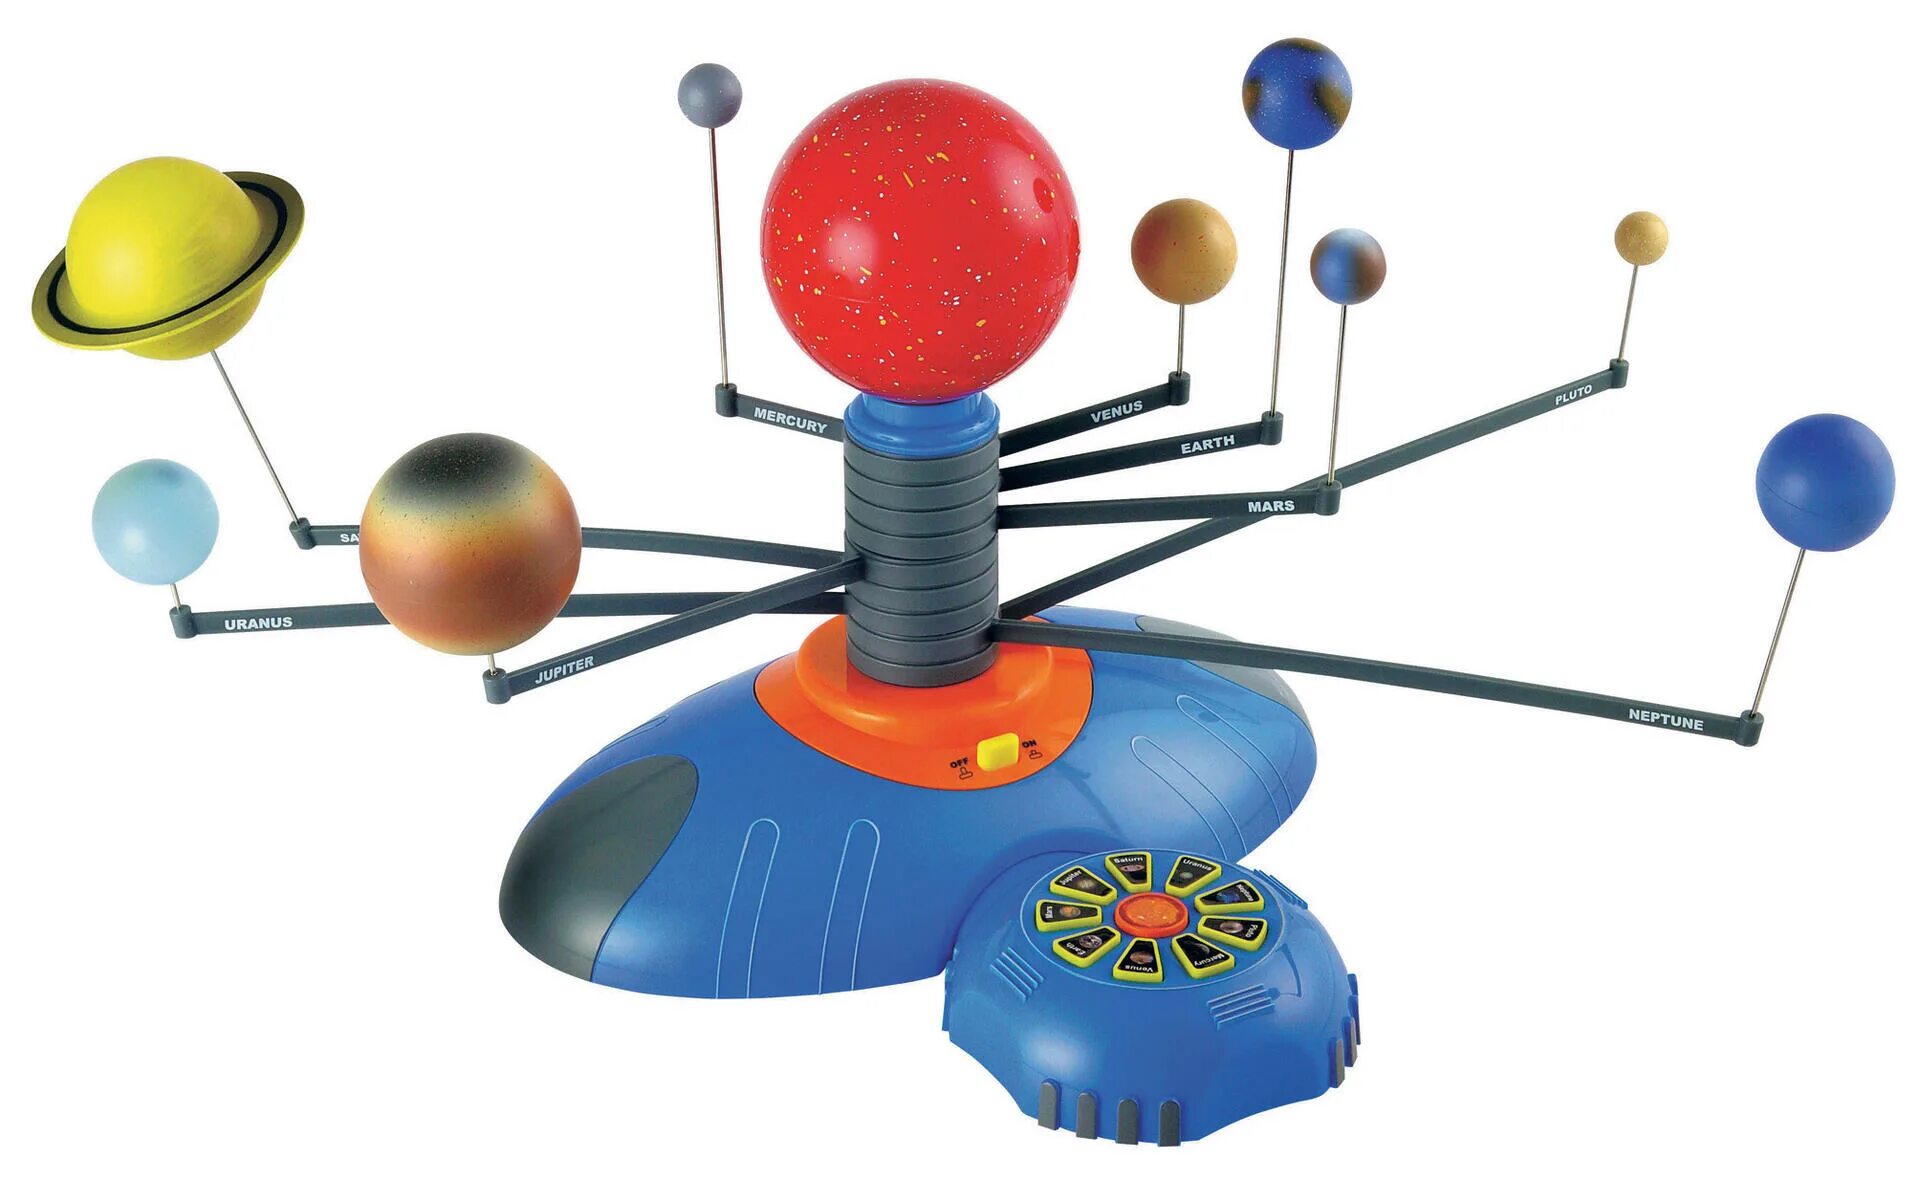 Модель солнечной системы edu-Toys ge020. Макет солнечной системы. Солнечная система для детей игрушка. Школьная модель солнечной системы.